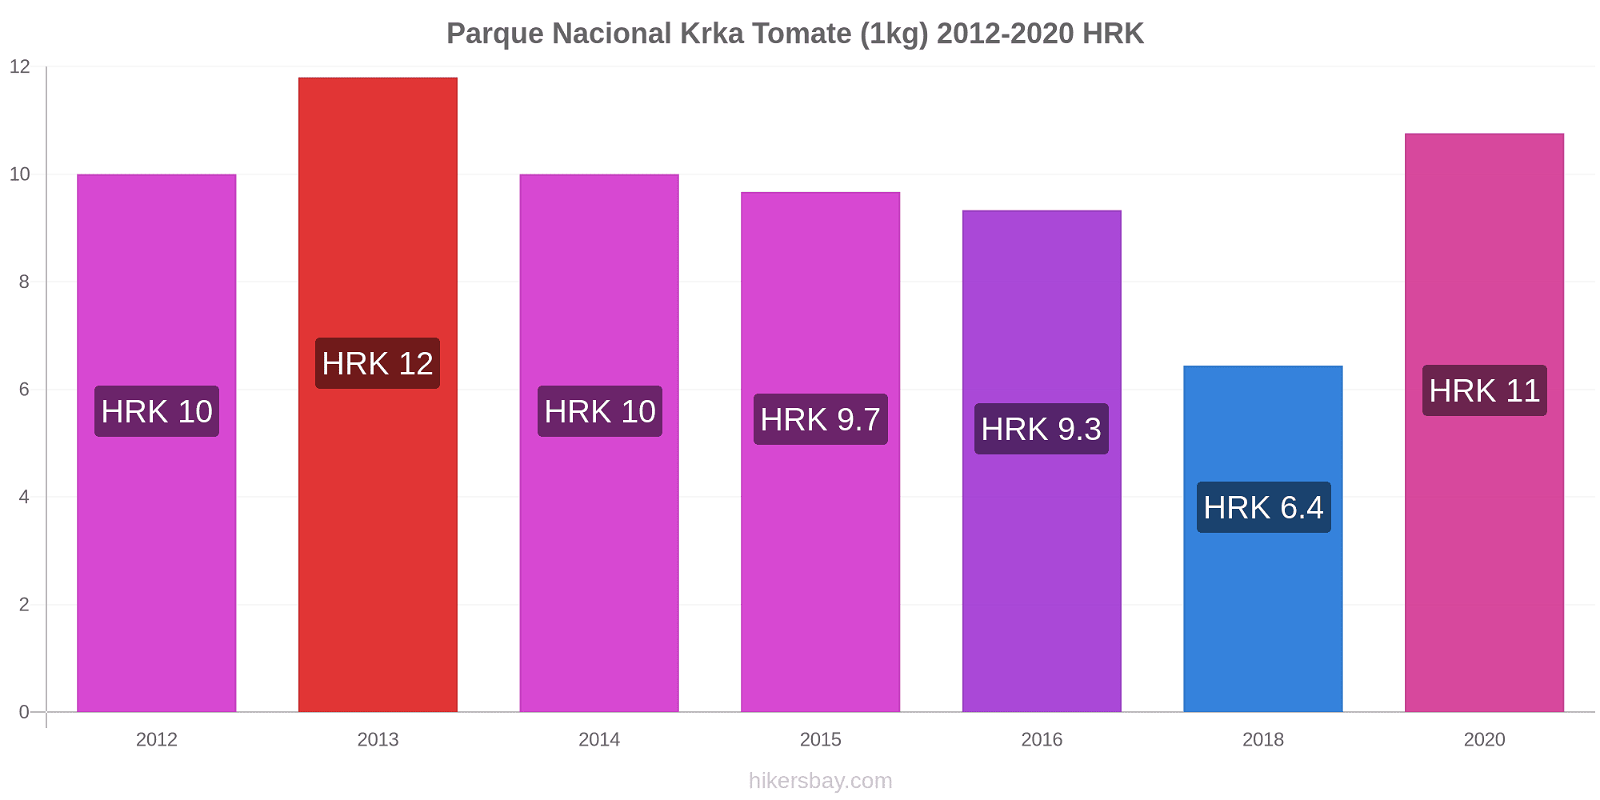 Parque Nacional Krka variação de preço Tomate (1kg) hikersbay.com